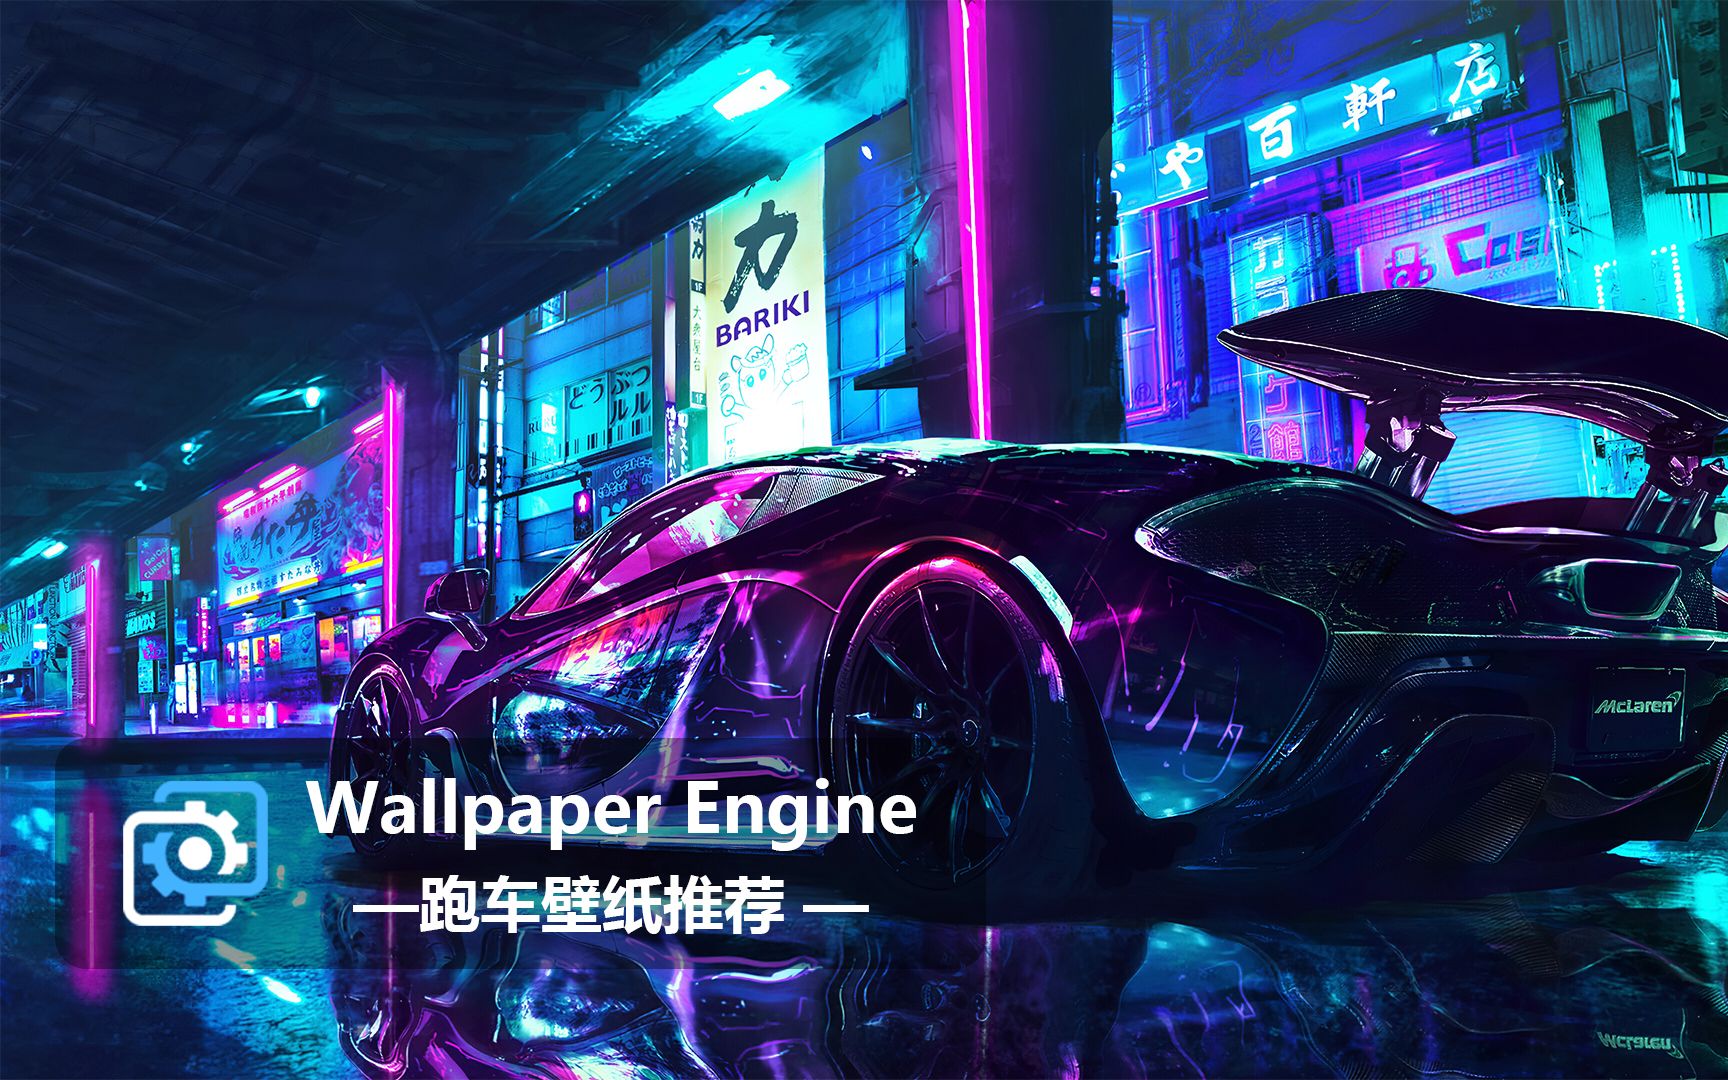 【Wallpaper Engine】壁纸推荐 | 跑车系列第一期